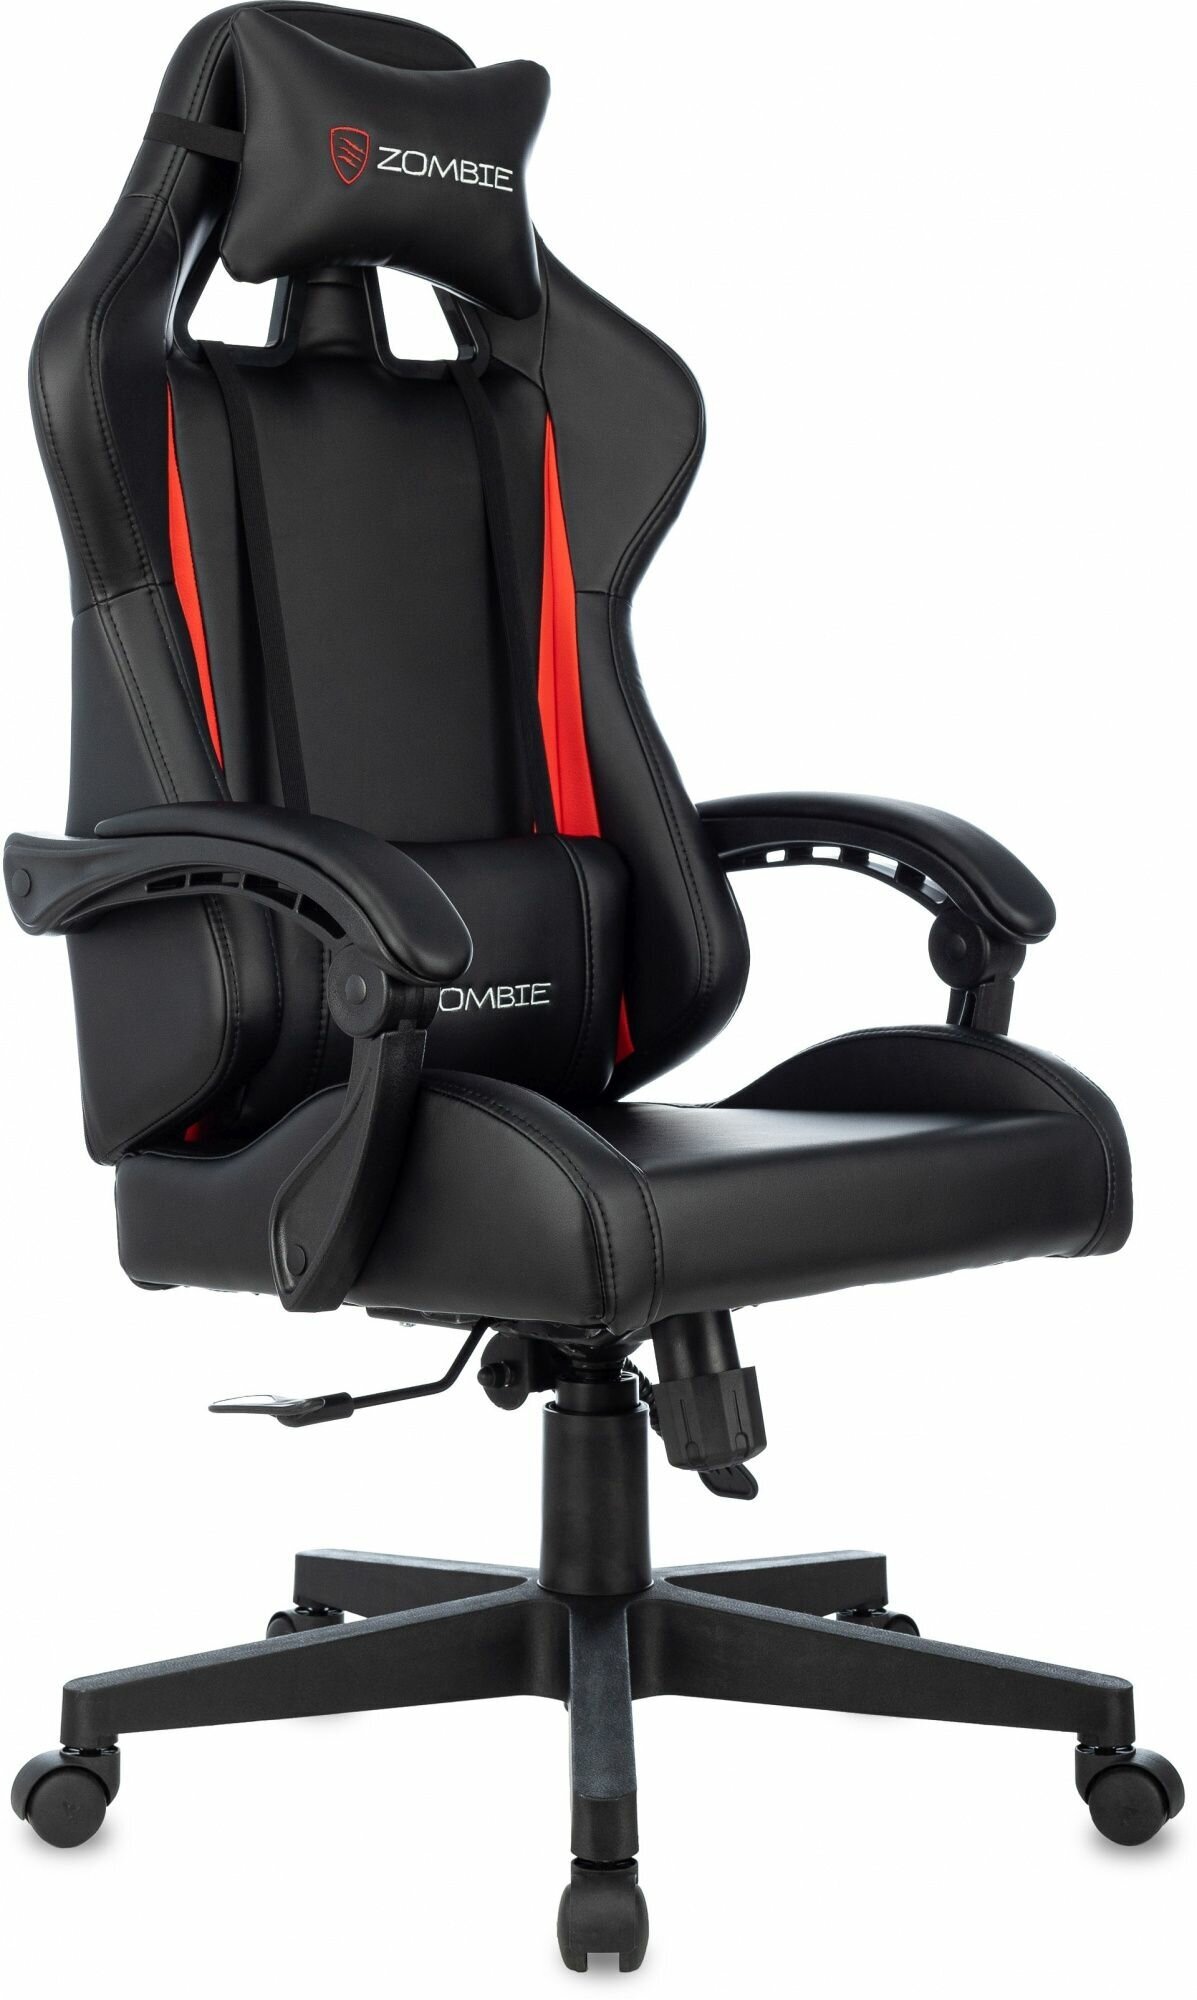 Компьютерное кресло Zombie Game Tetra Black-Red